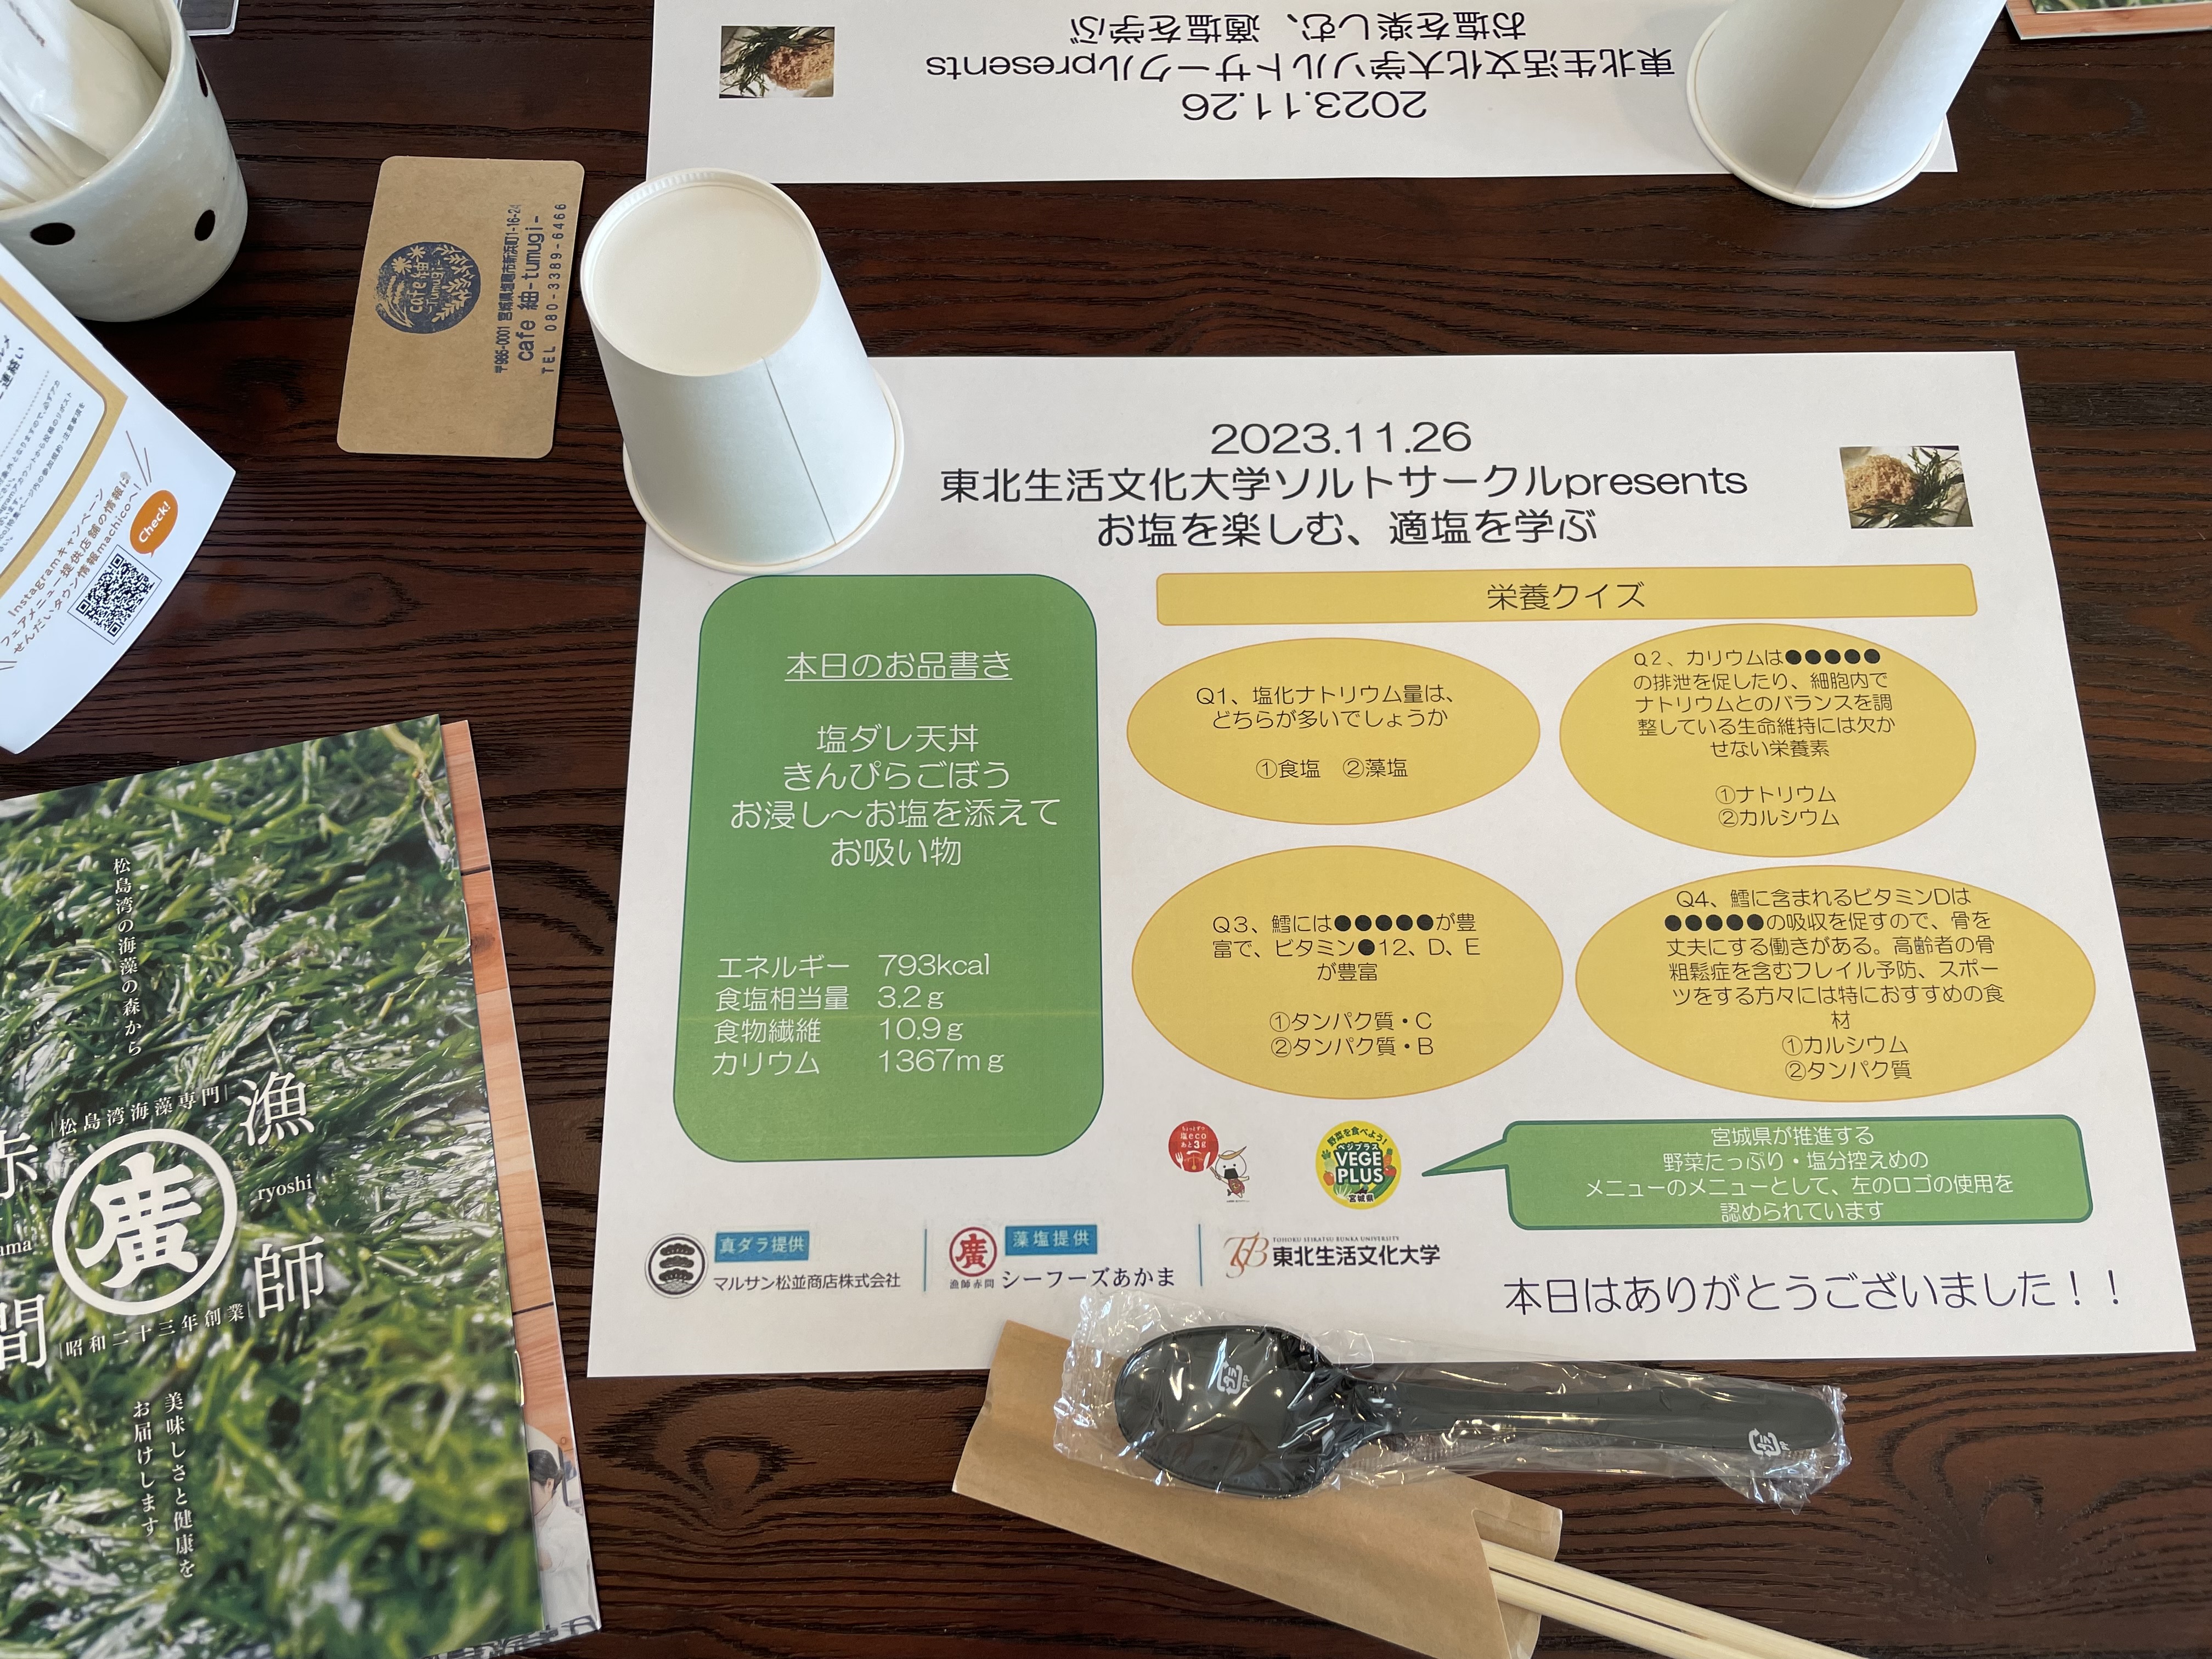 東北生活文化大学ソルトサークルとの合同イベント開催報告